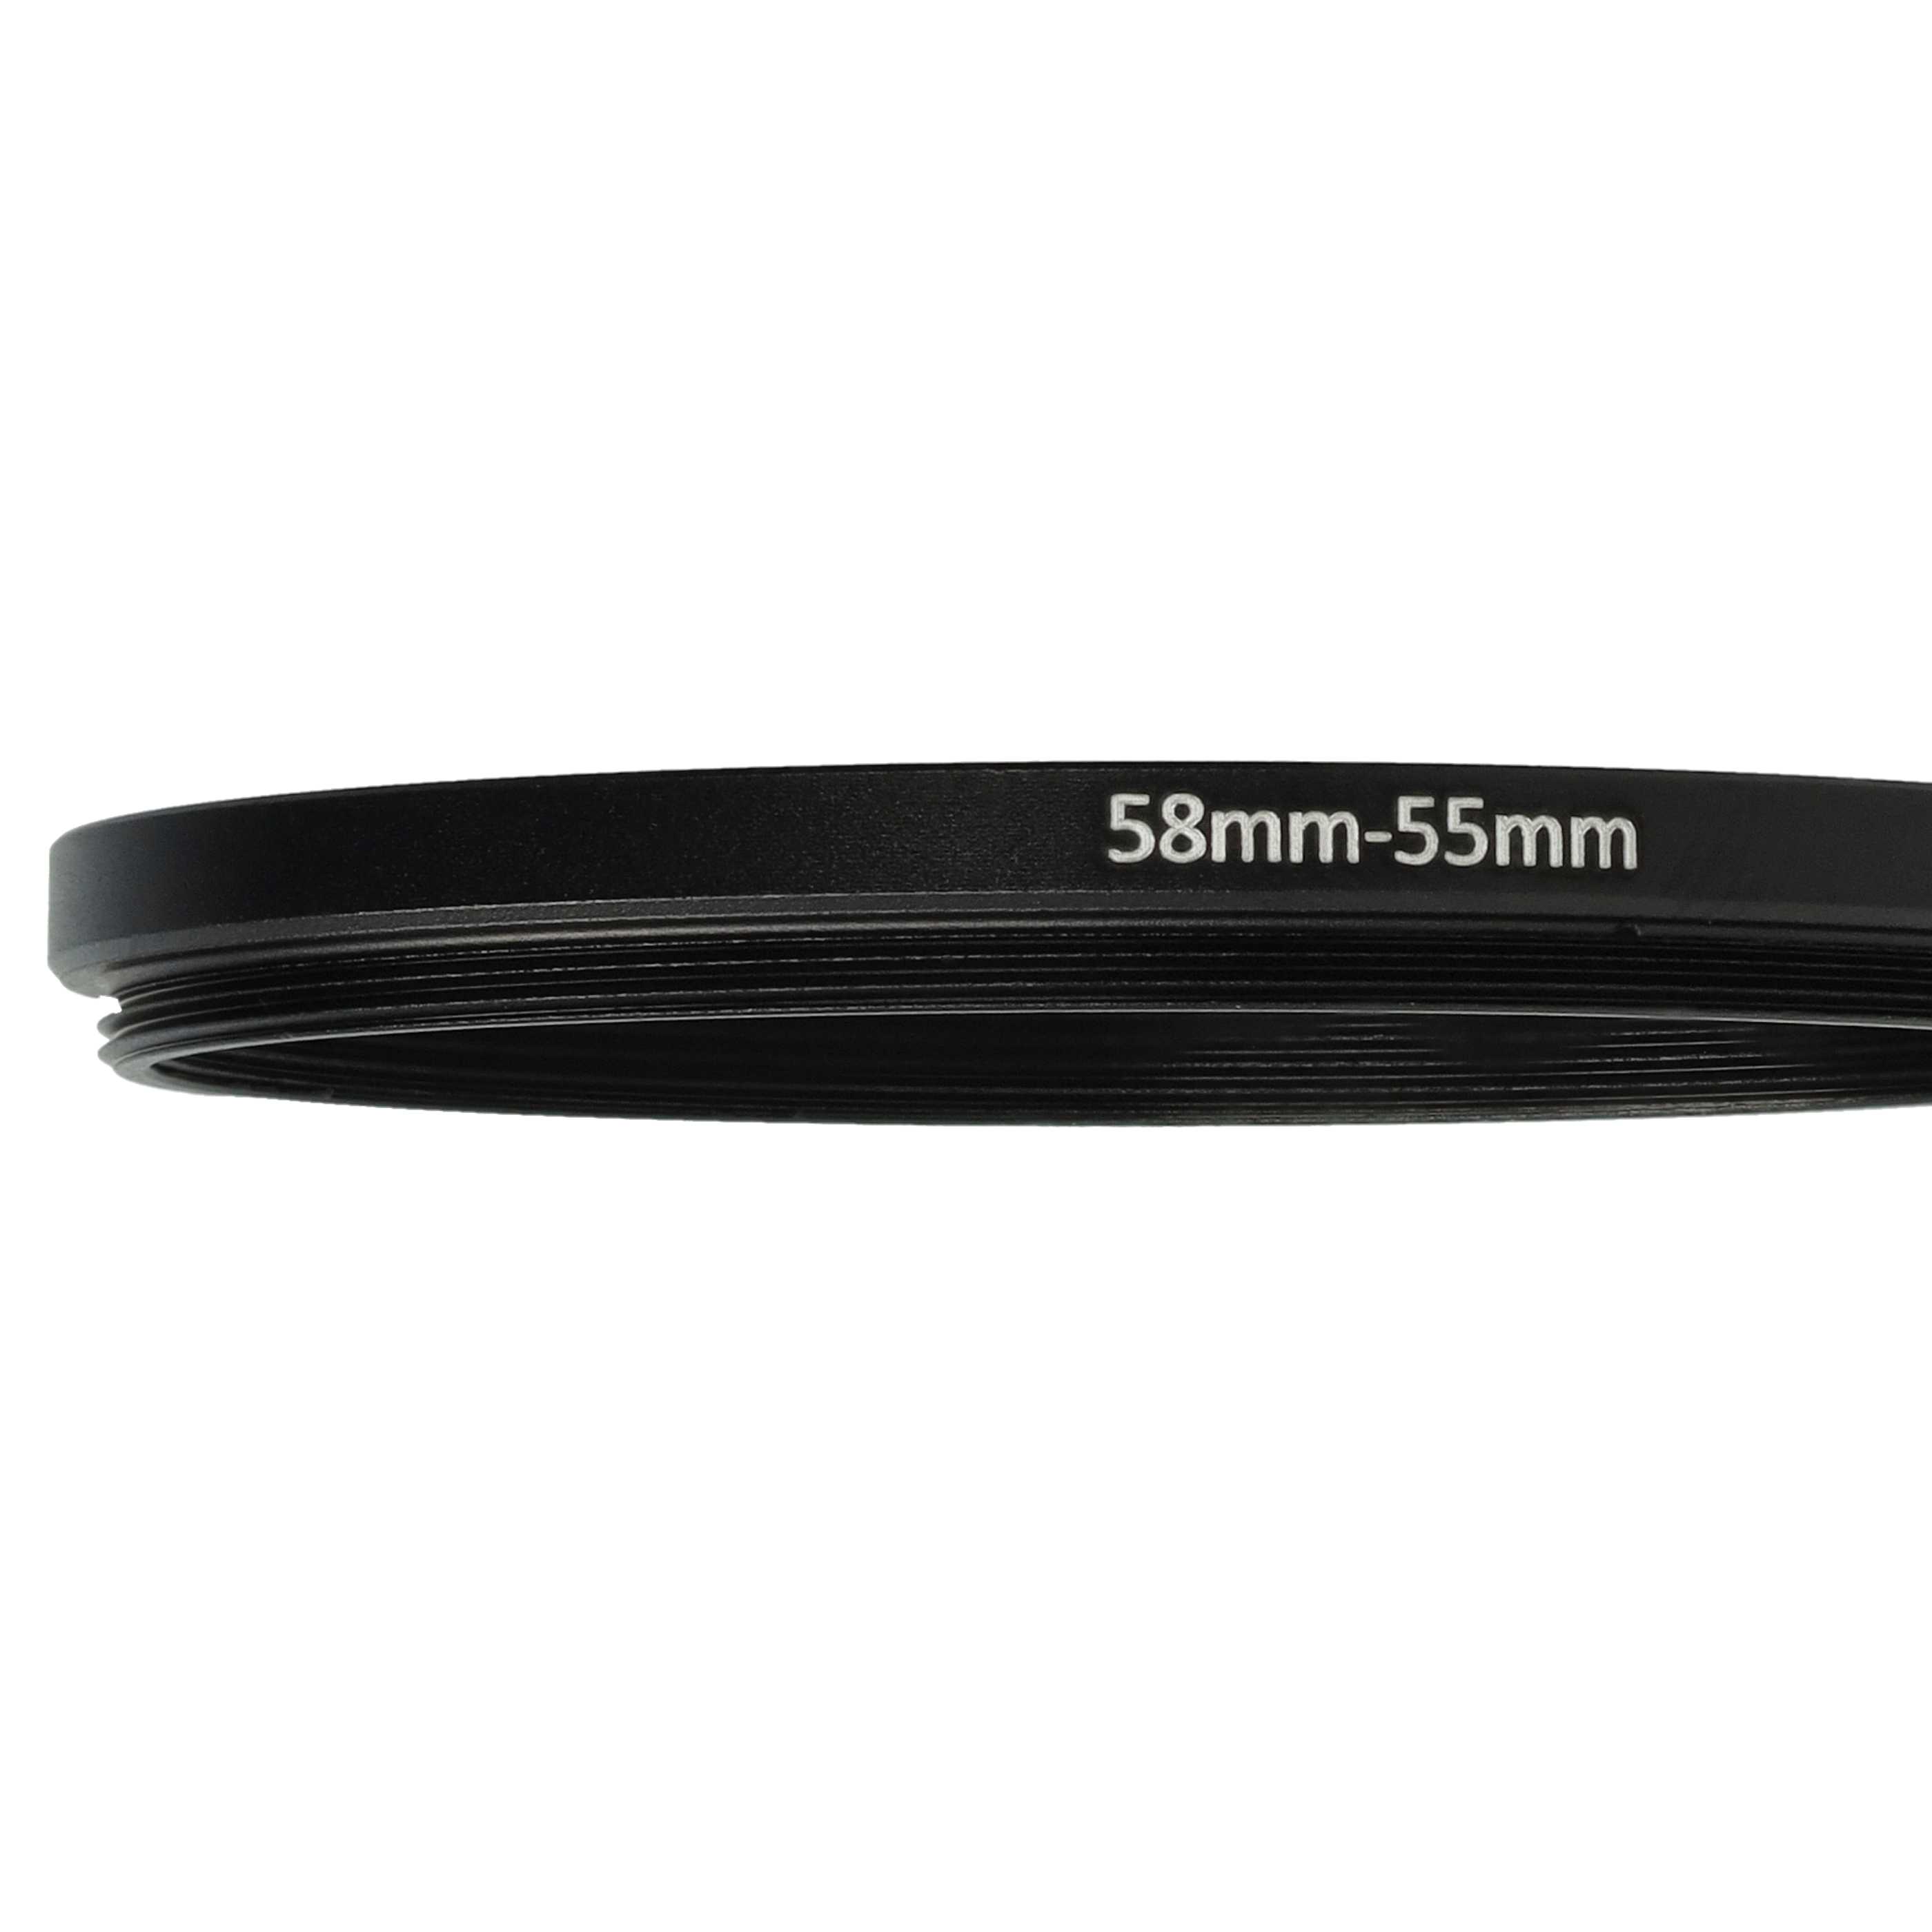 Redukcja filtrowa adapter Step-Down 58 mm - 55 mm pasująca do obiektywu - metal, czarny